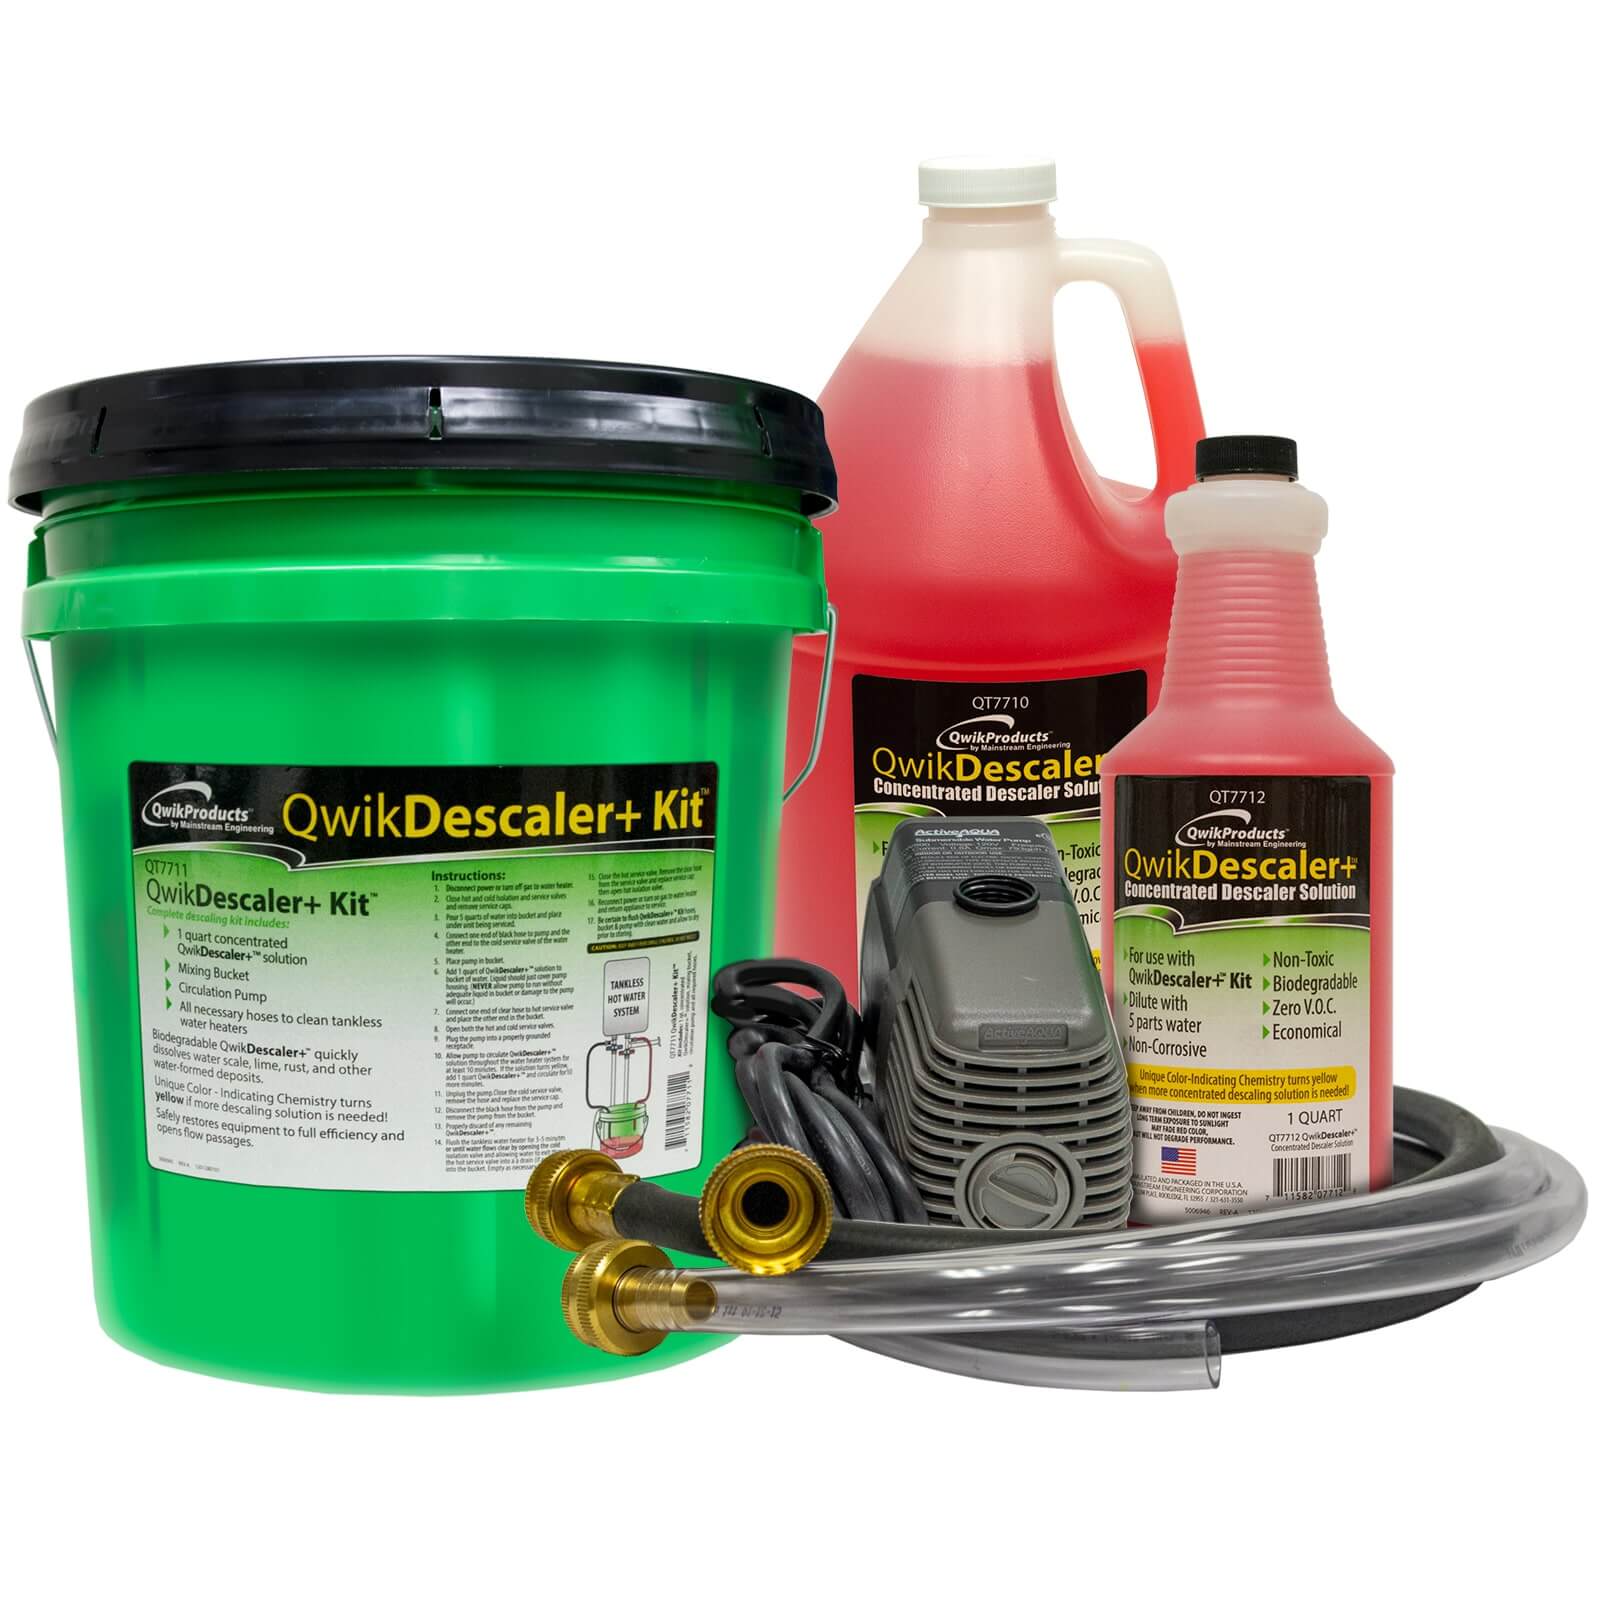 Drainx Tankless Water Heater Flush Kit - Red/ Black